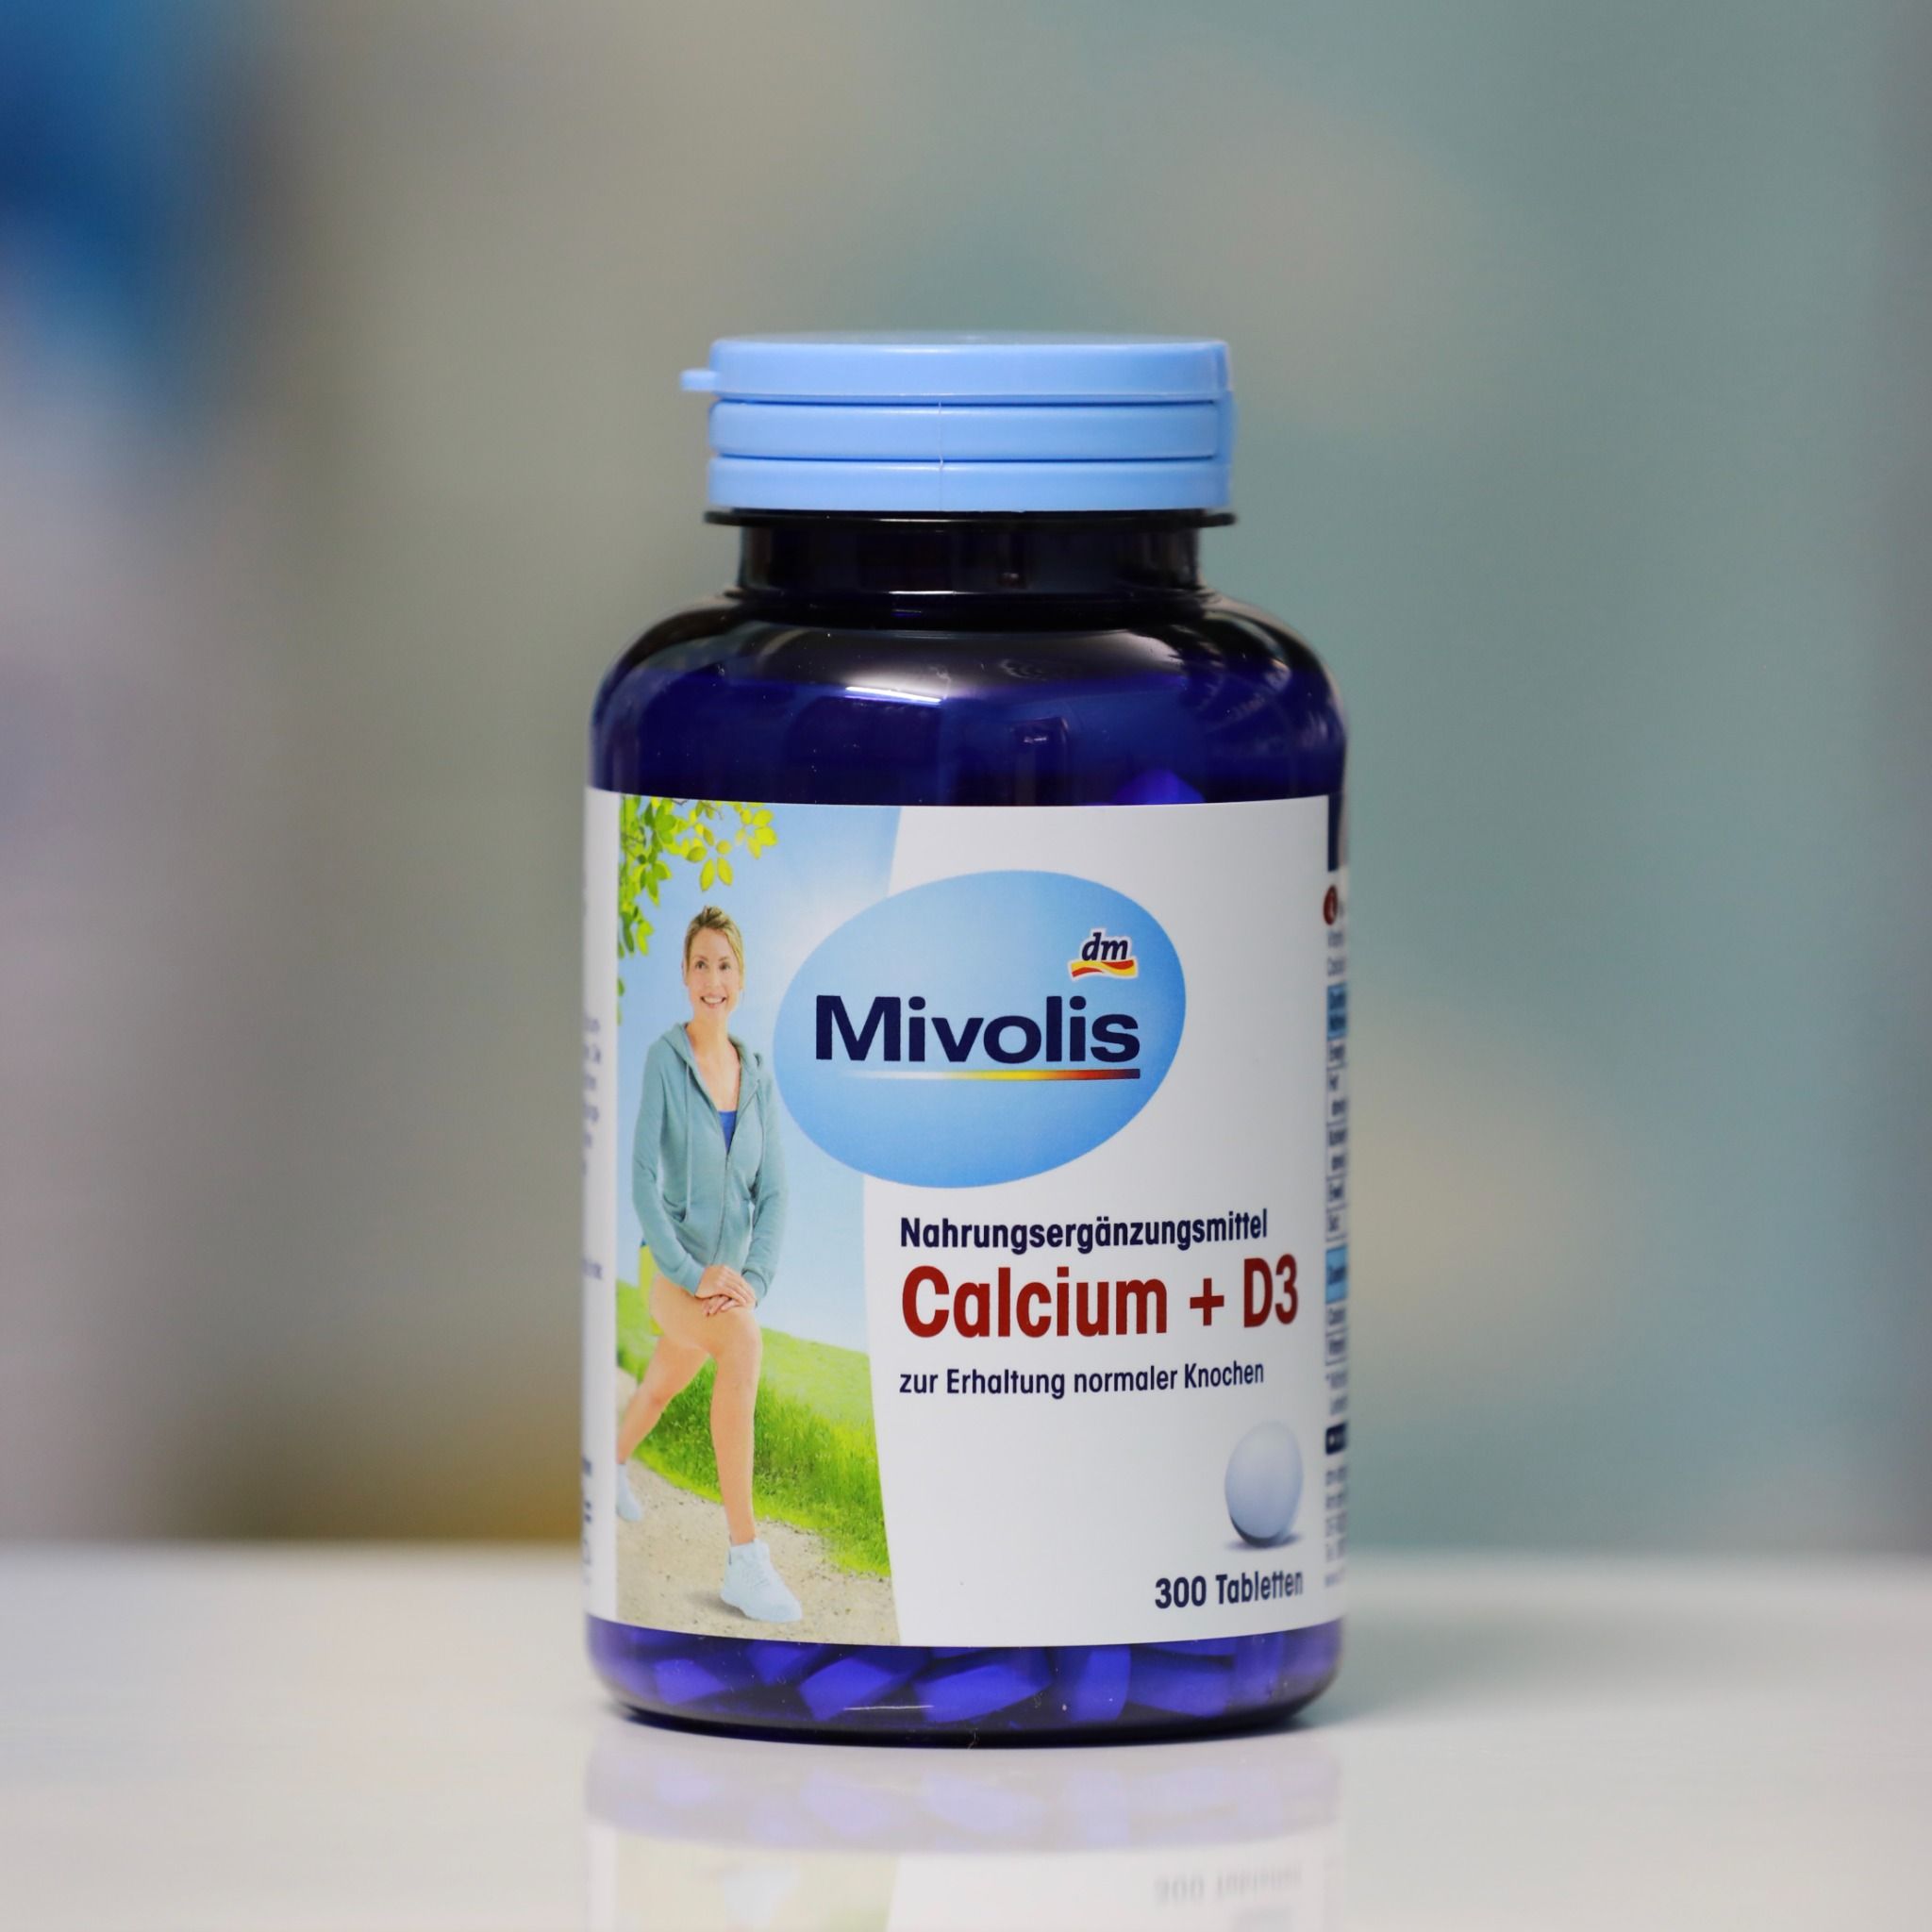  Viên Uống Mivolis Calcium + D3, 300 viên 